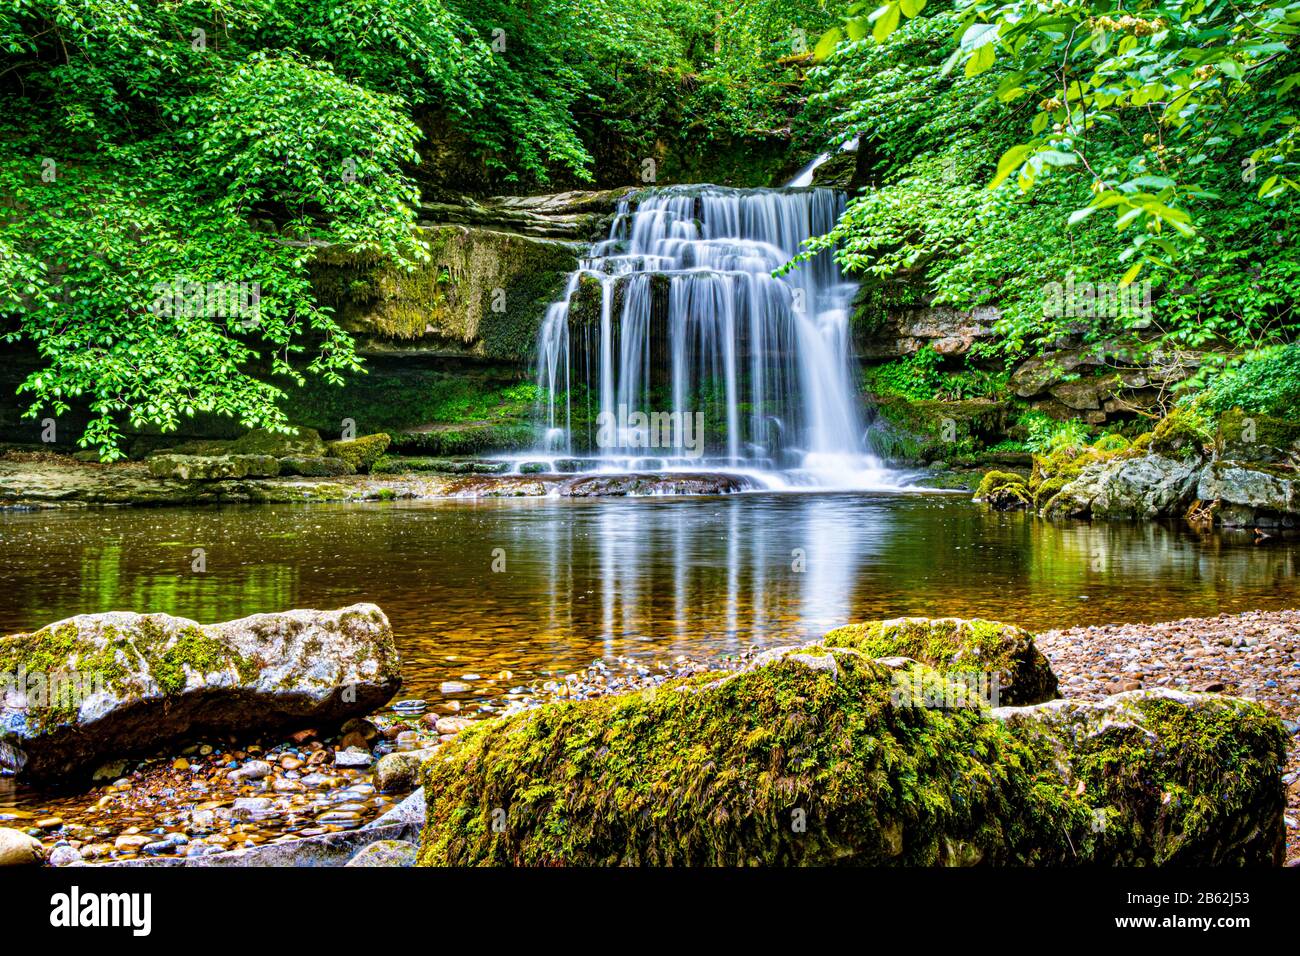 Cauldron Falls (auch bekannt als West Burton Falls), West Burton, Lower Wensleydale, Yorkshire Dales, England, Großbritannien Stockfoto